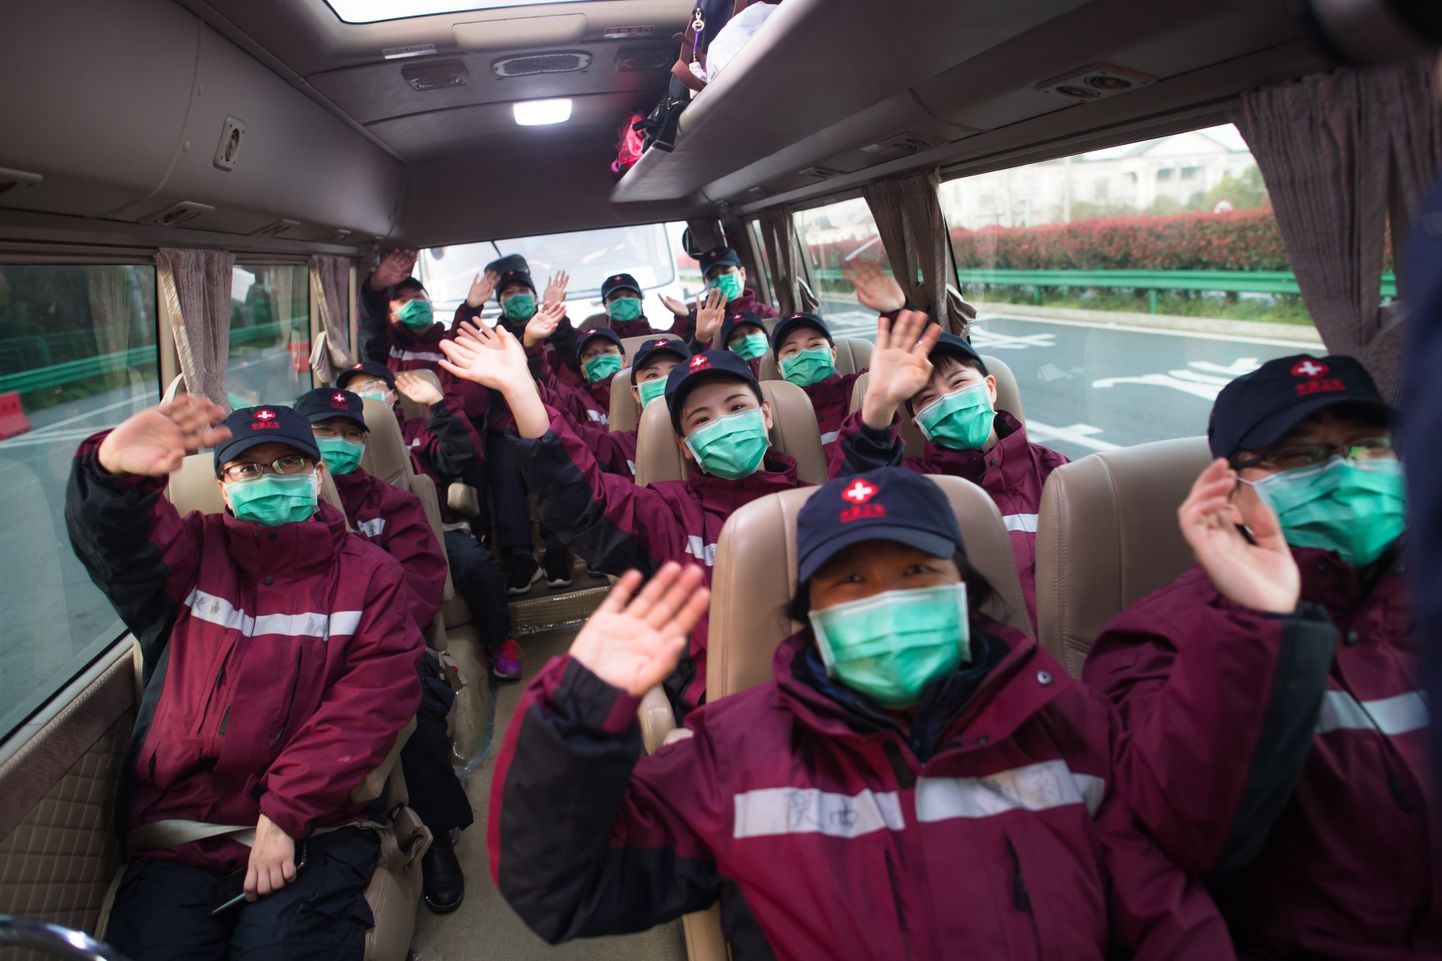 Hiina Shaanxi provintsist koroonaviiruse epitsentrisse Wuhani linna appi saadetud meedikud lahkusid sealt täna varahommikul. Esimesed 43 tervishoiutöötajat toimetati bussides tagasi koju, sest uute haigestunute arv Wuhanis on viimastel nädalatel langenud.